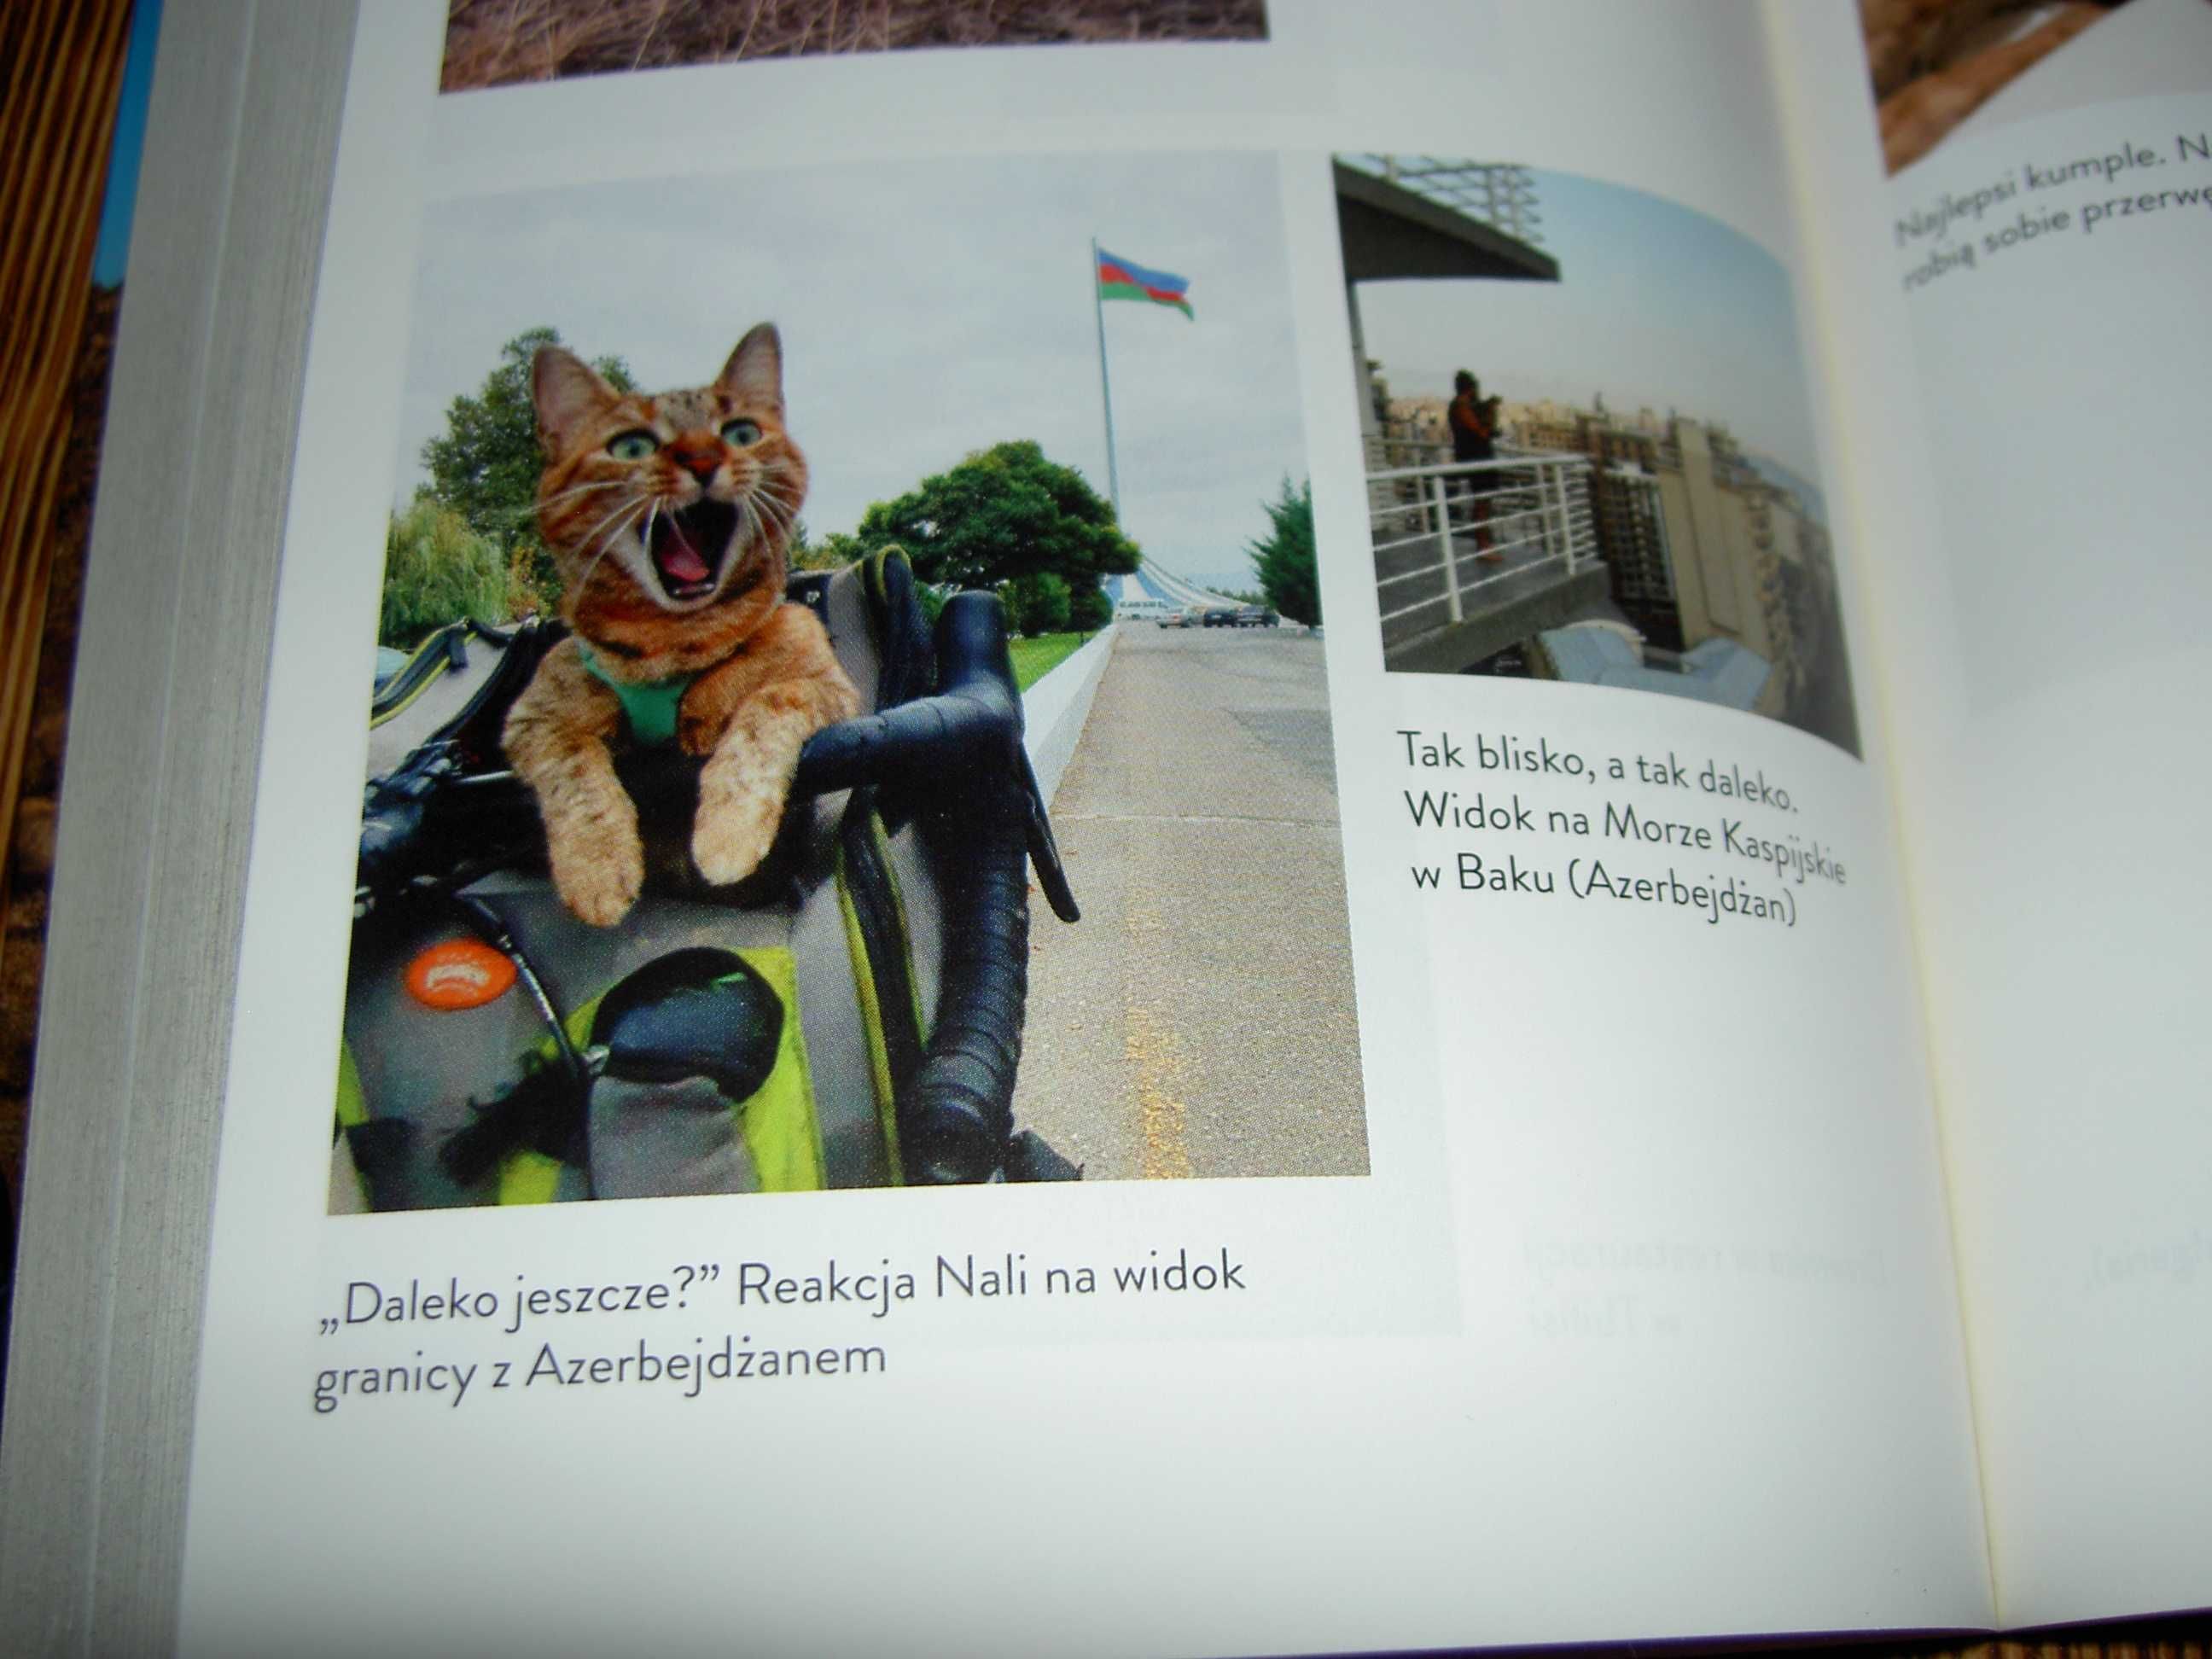 Świat Nali Dean Nicholson Człowiek Kot Rower podróż dookoła świata